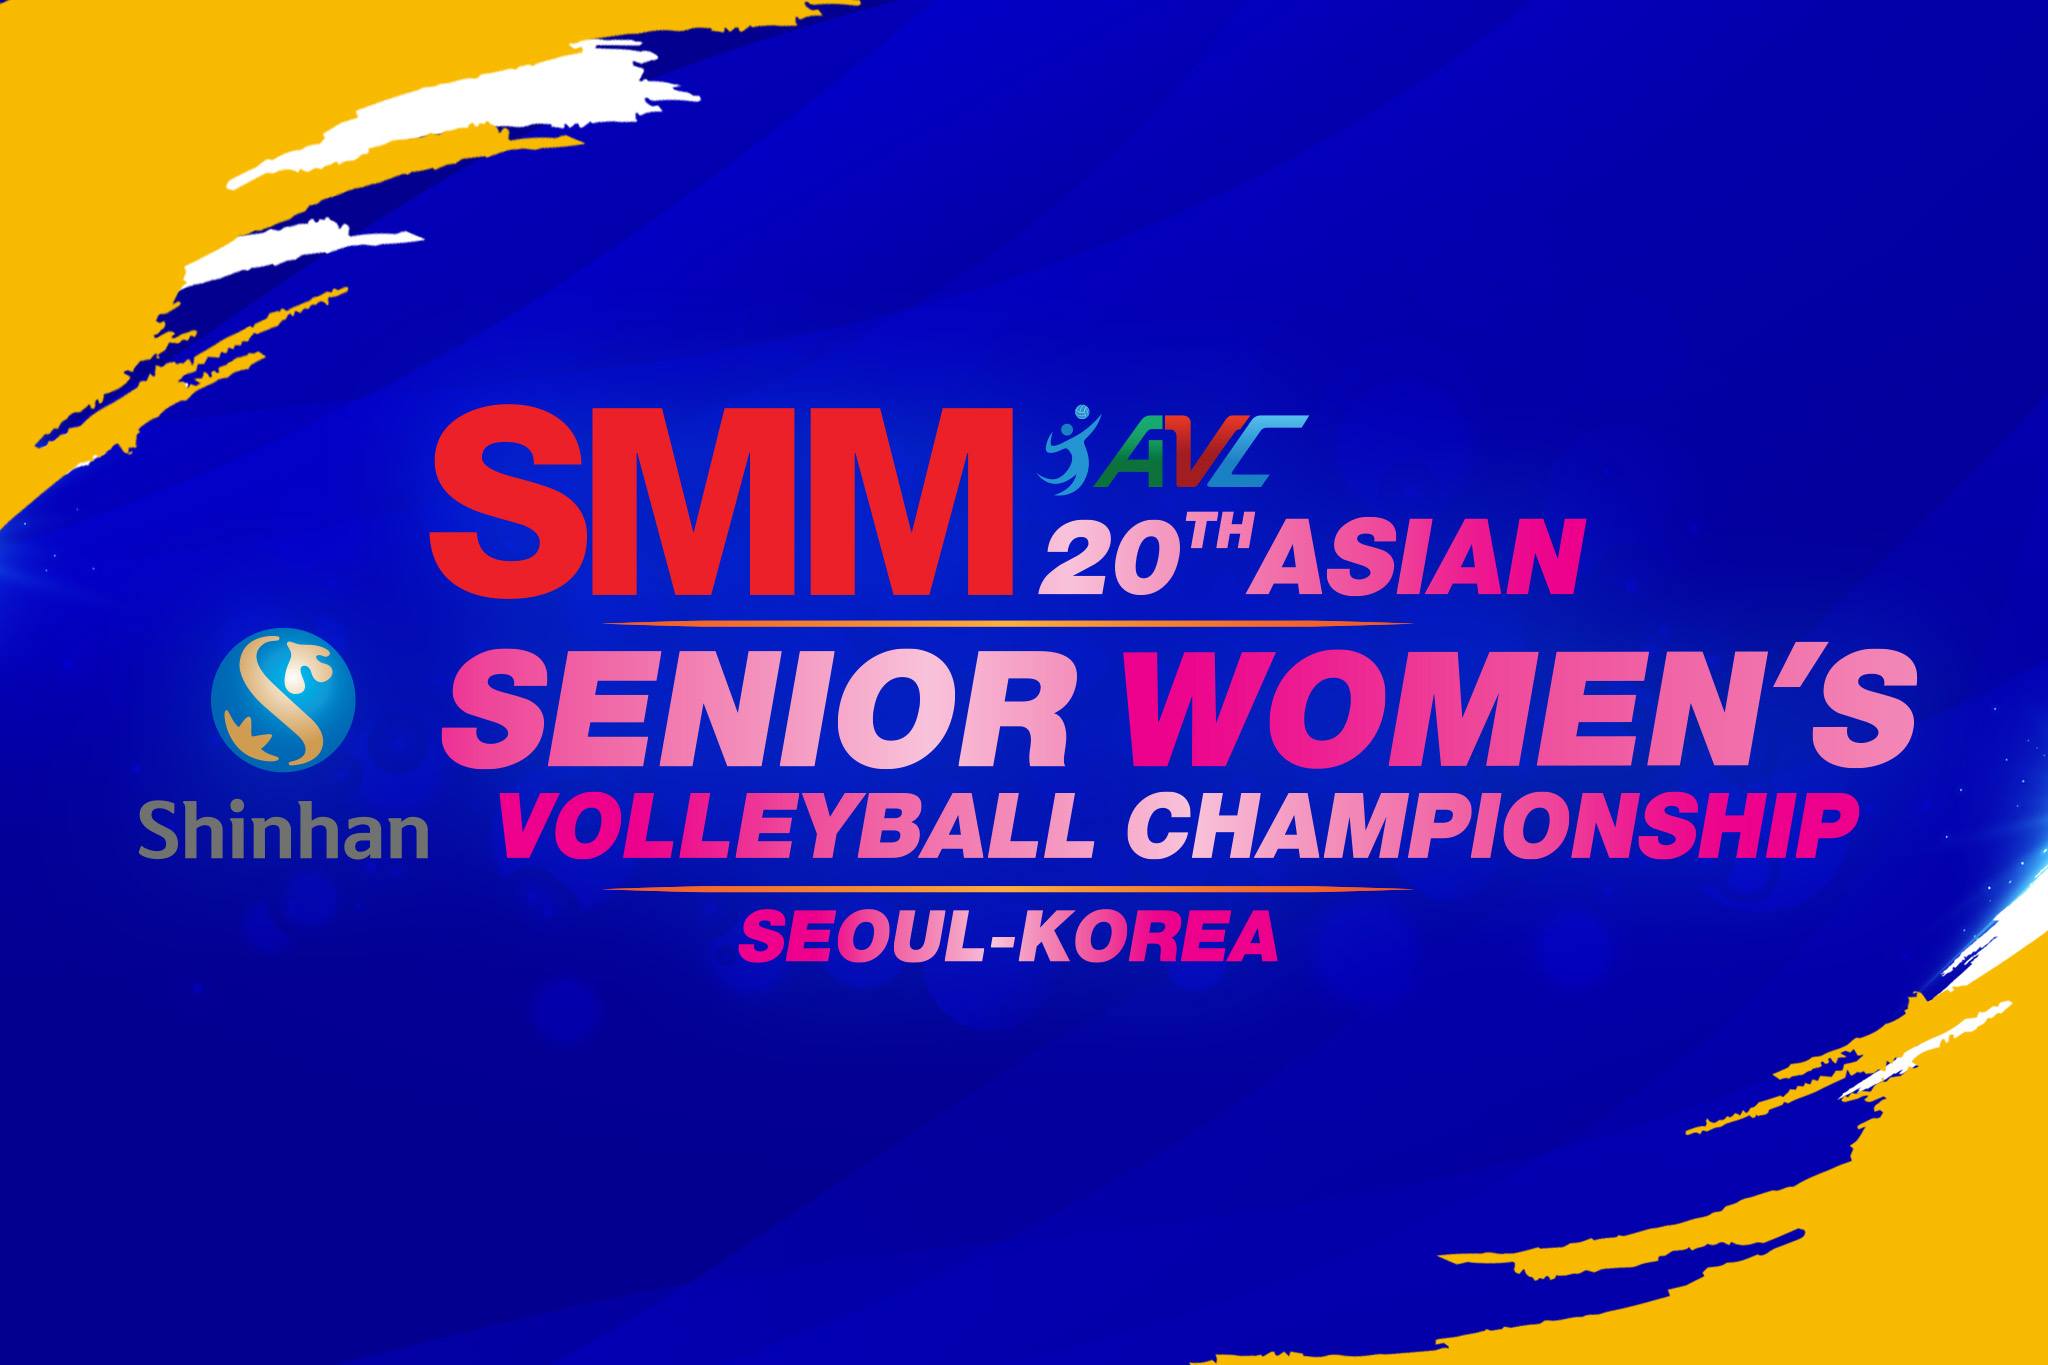 วอลเลย์บอลหญิงชิงแชมป์เอเชีย 2019 ถ่ายทอดสดวันนี้